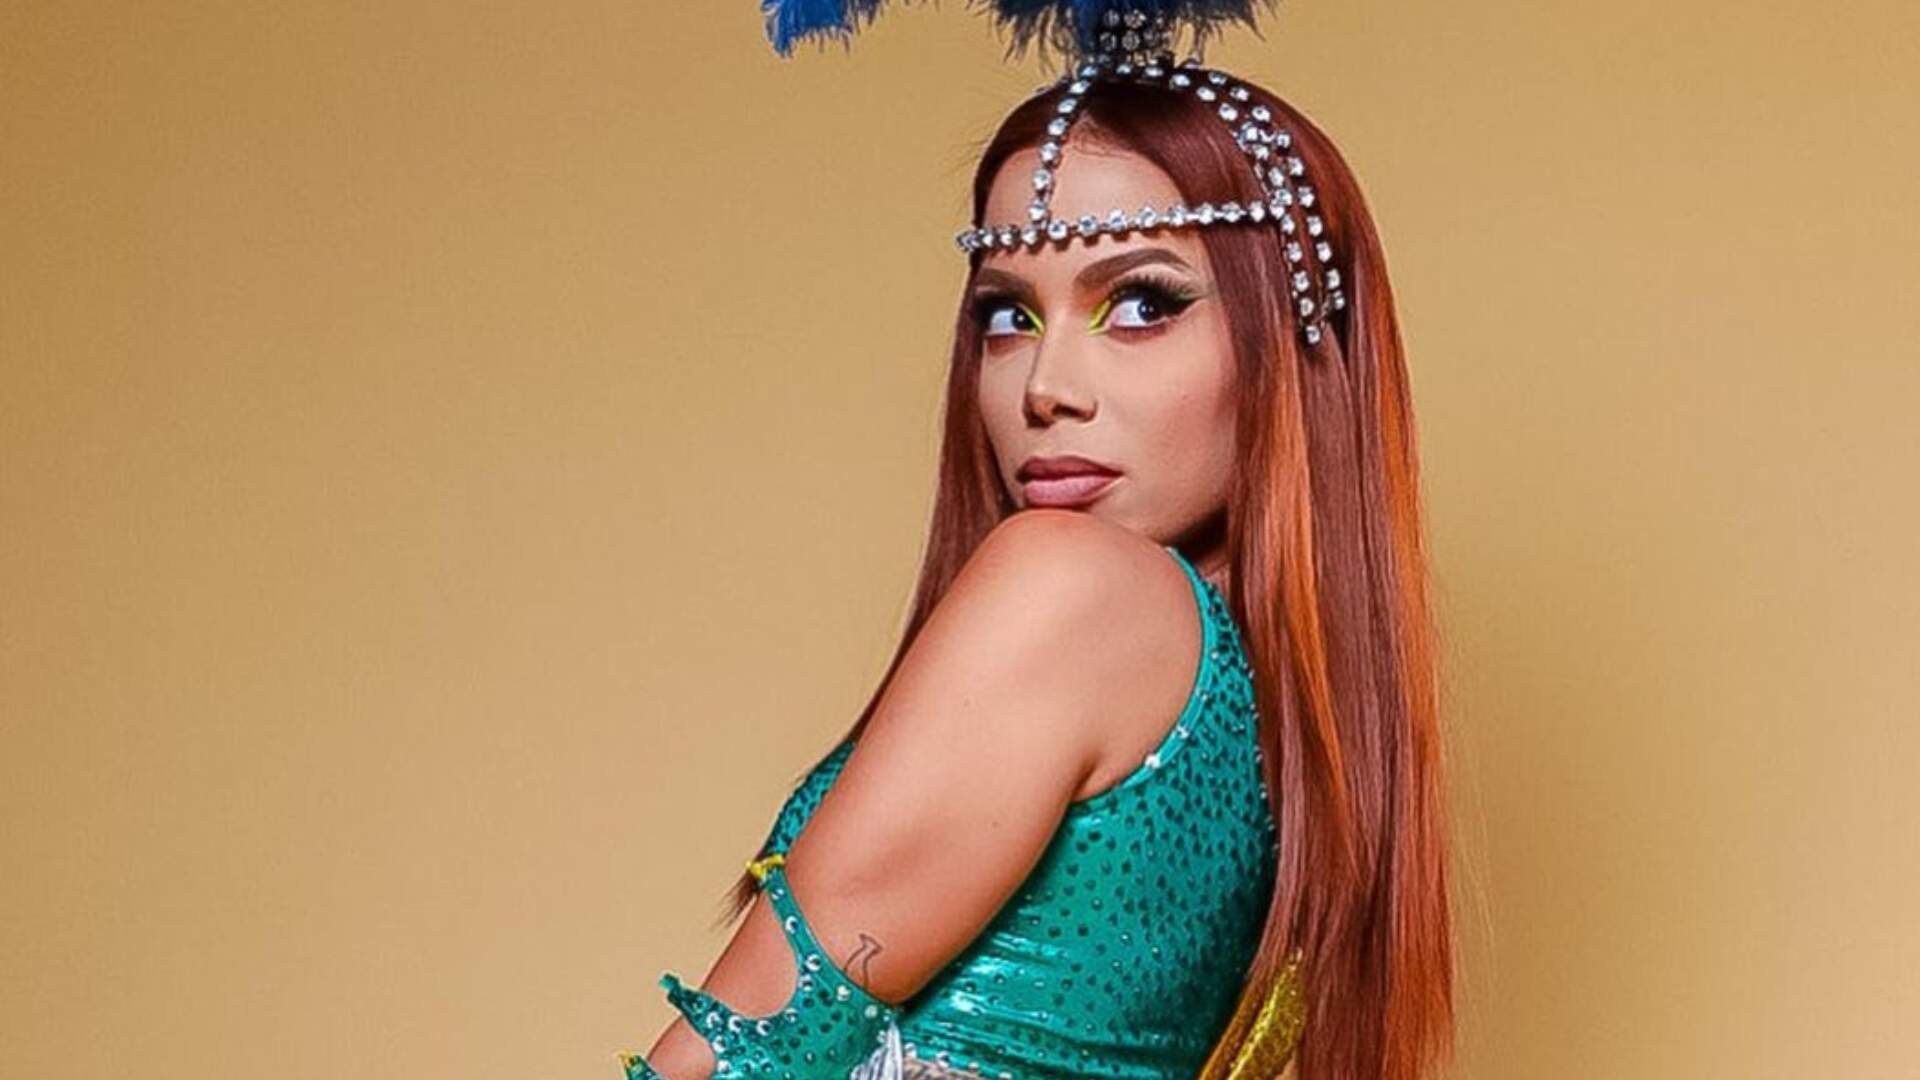 Anitta impressiona com tamanho do bumbum engolindo a fantasia de Carnaval: “Pequena demais” - Metropolitana FM